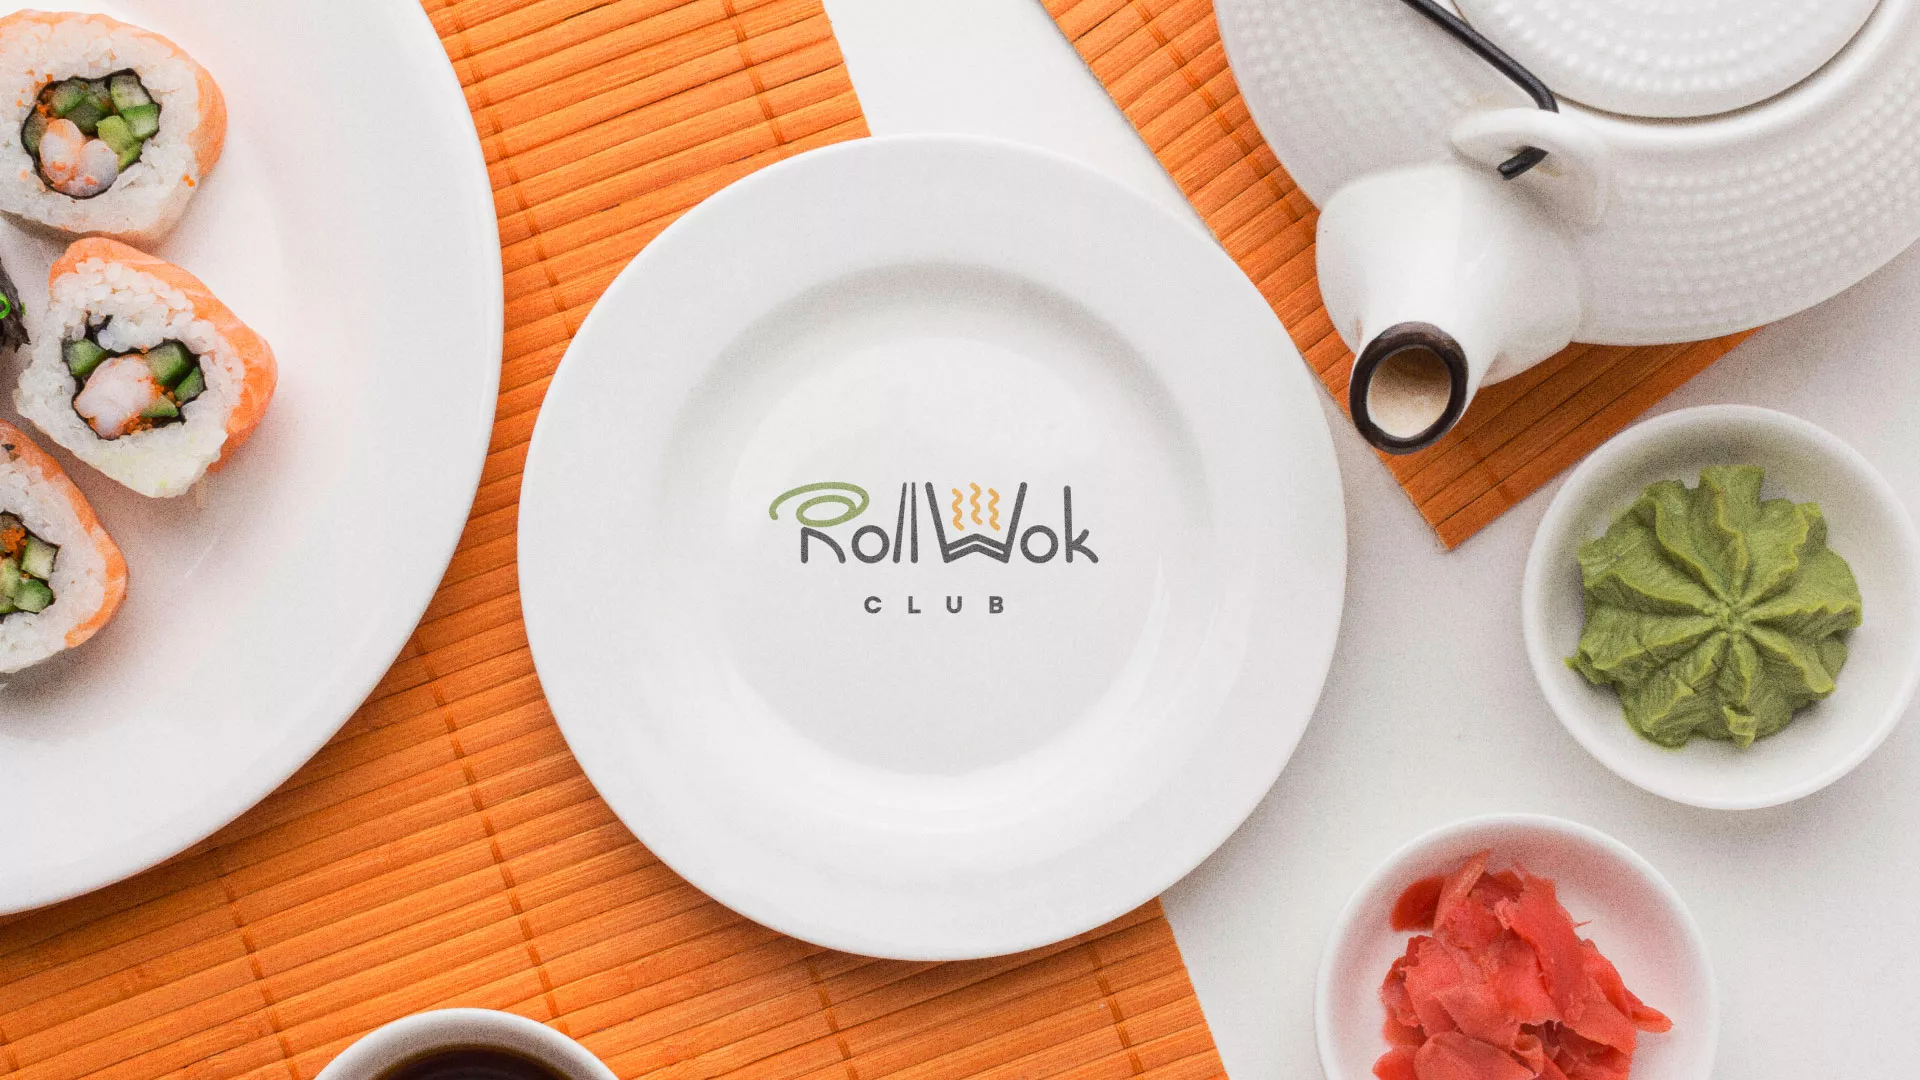 Разработка логотипа и фирменного стиля суши-бара «Roll Wok Club» в Тамбове